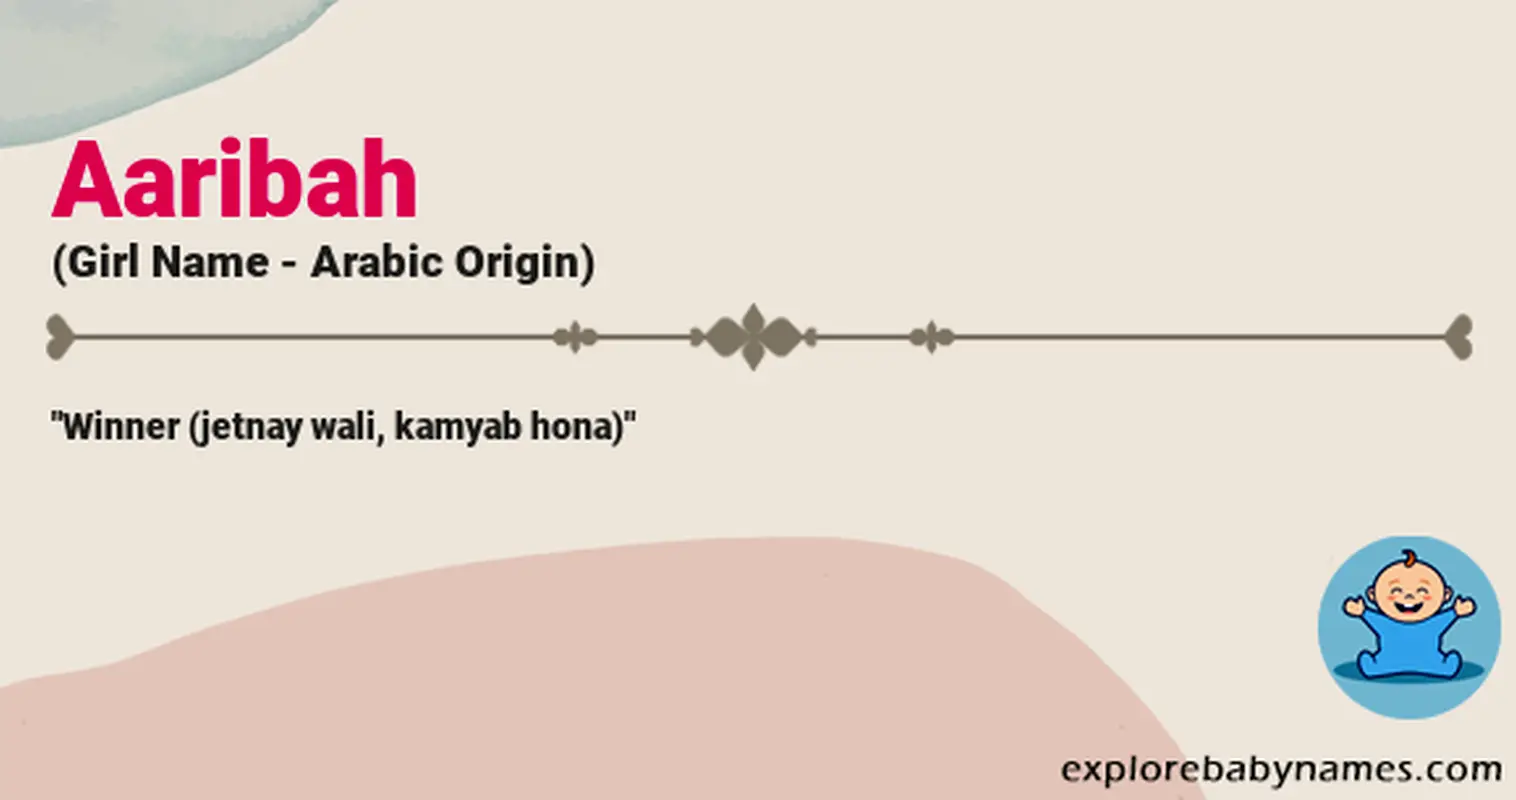 Meaning of Aaribah